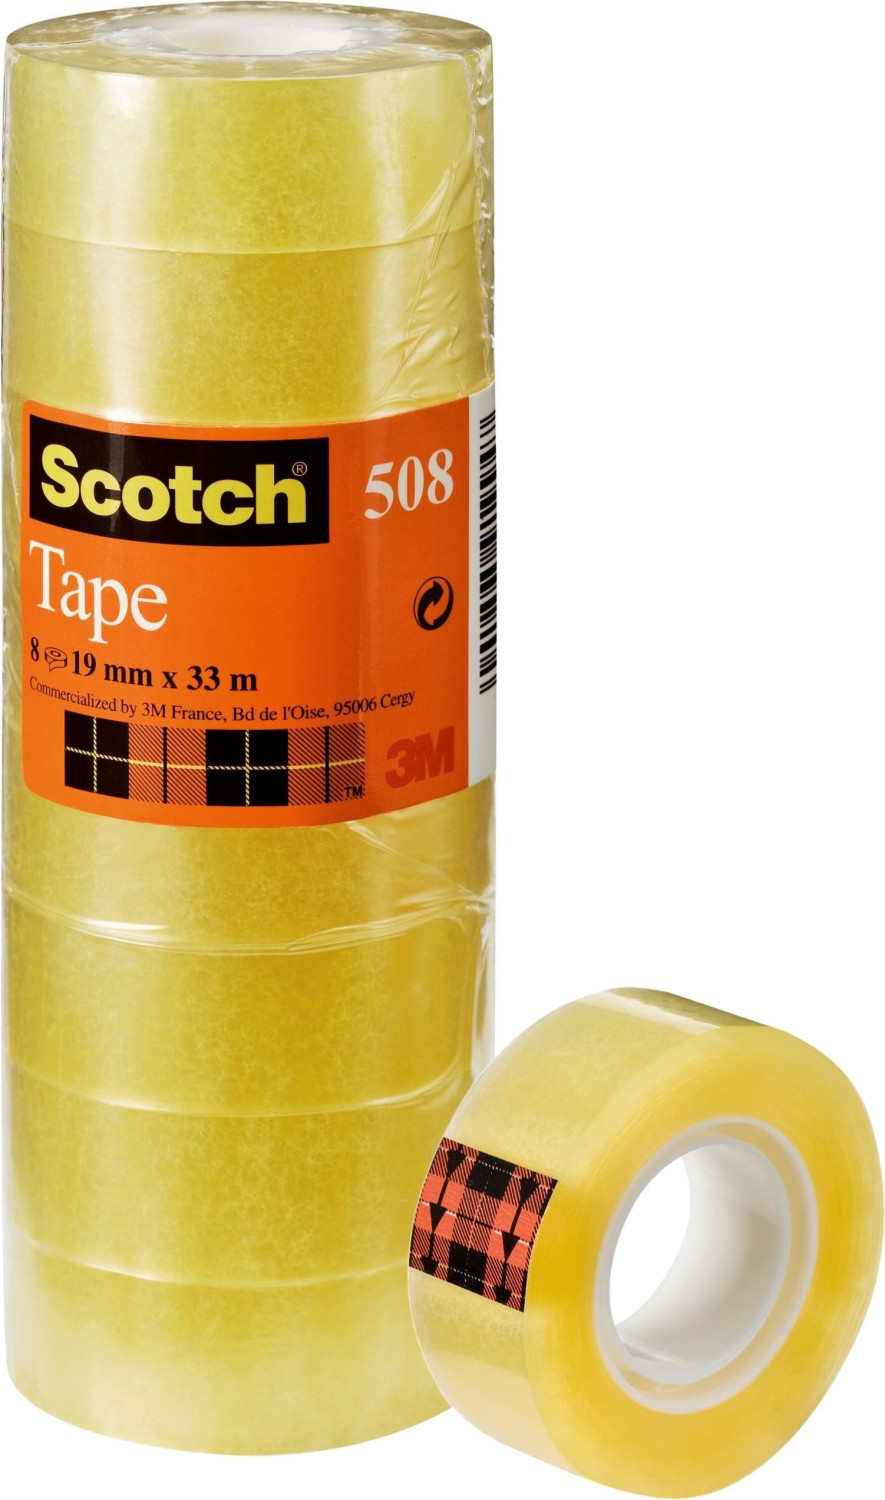 Scotch Ruban adhésiv 508 (FT510097270) au meilleur prix sur